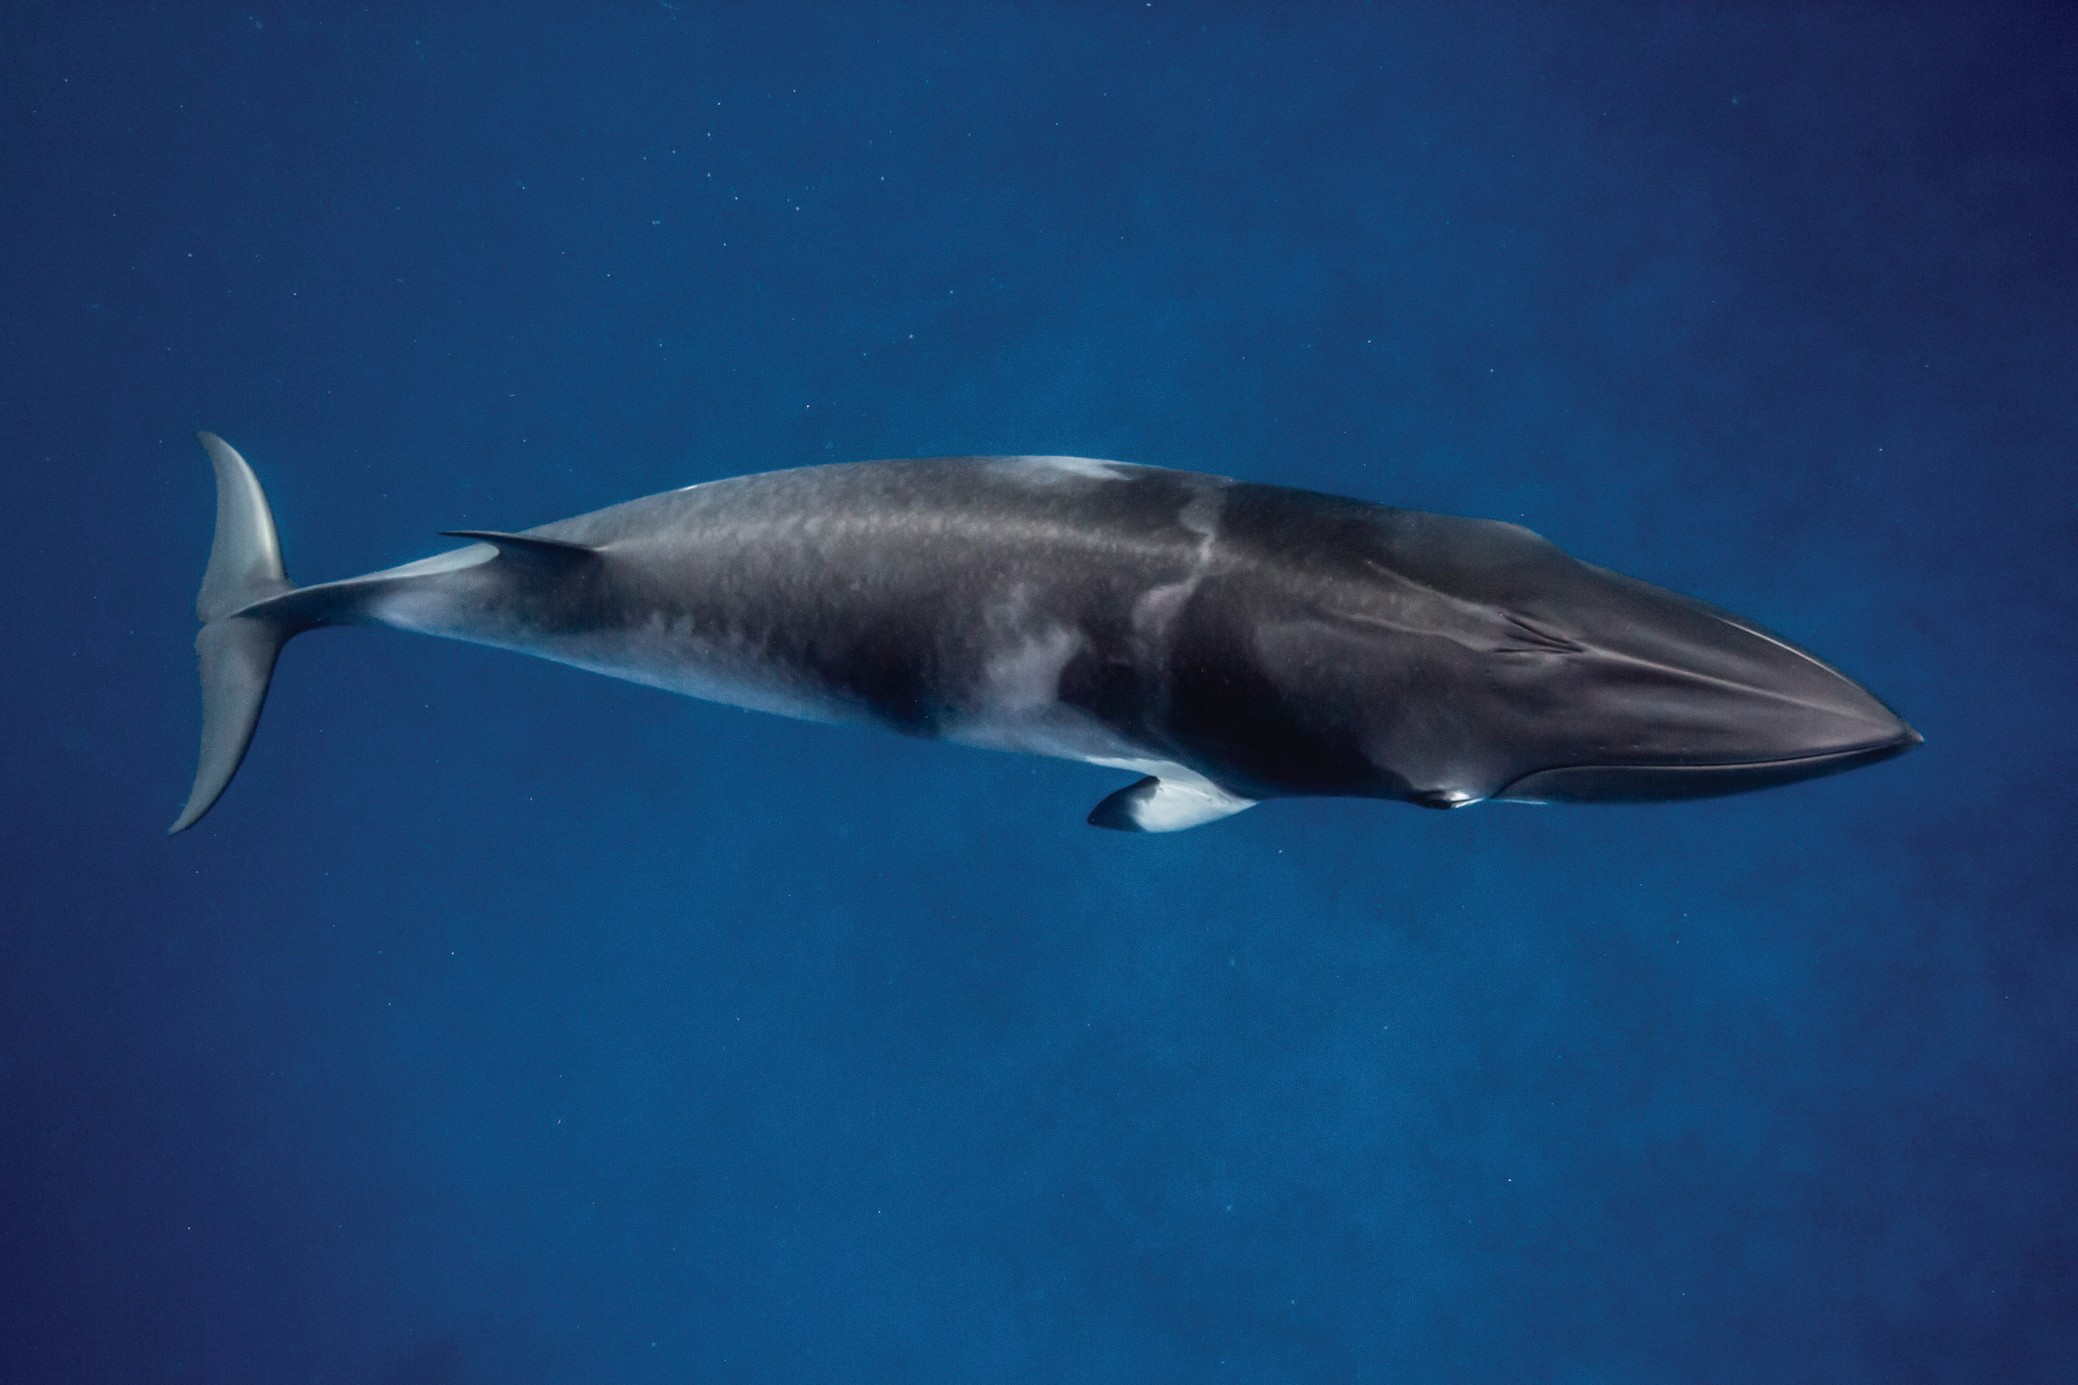 小须鲸大堡礁共享潜水艇除了共享潜水艇游览,大堡礁的游客们可以浮潜